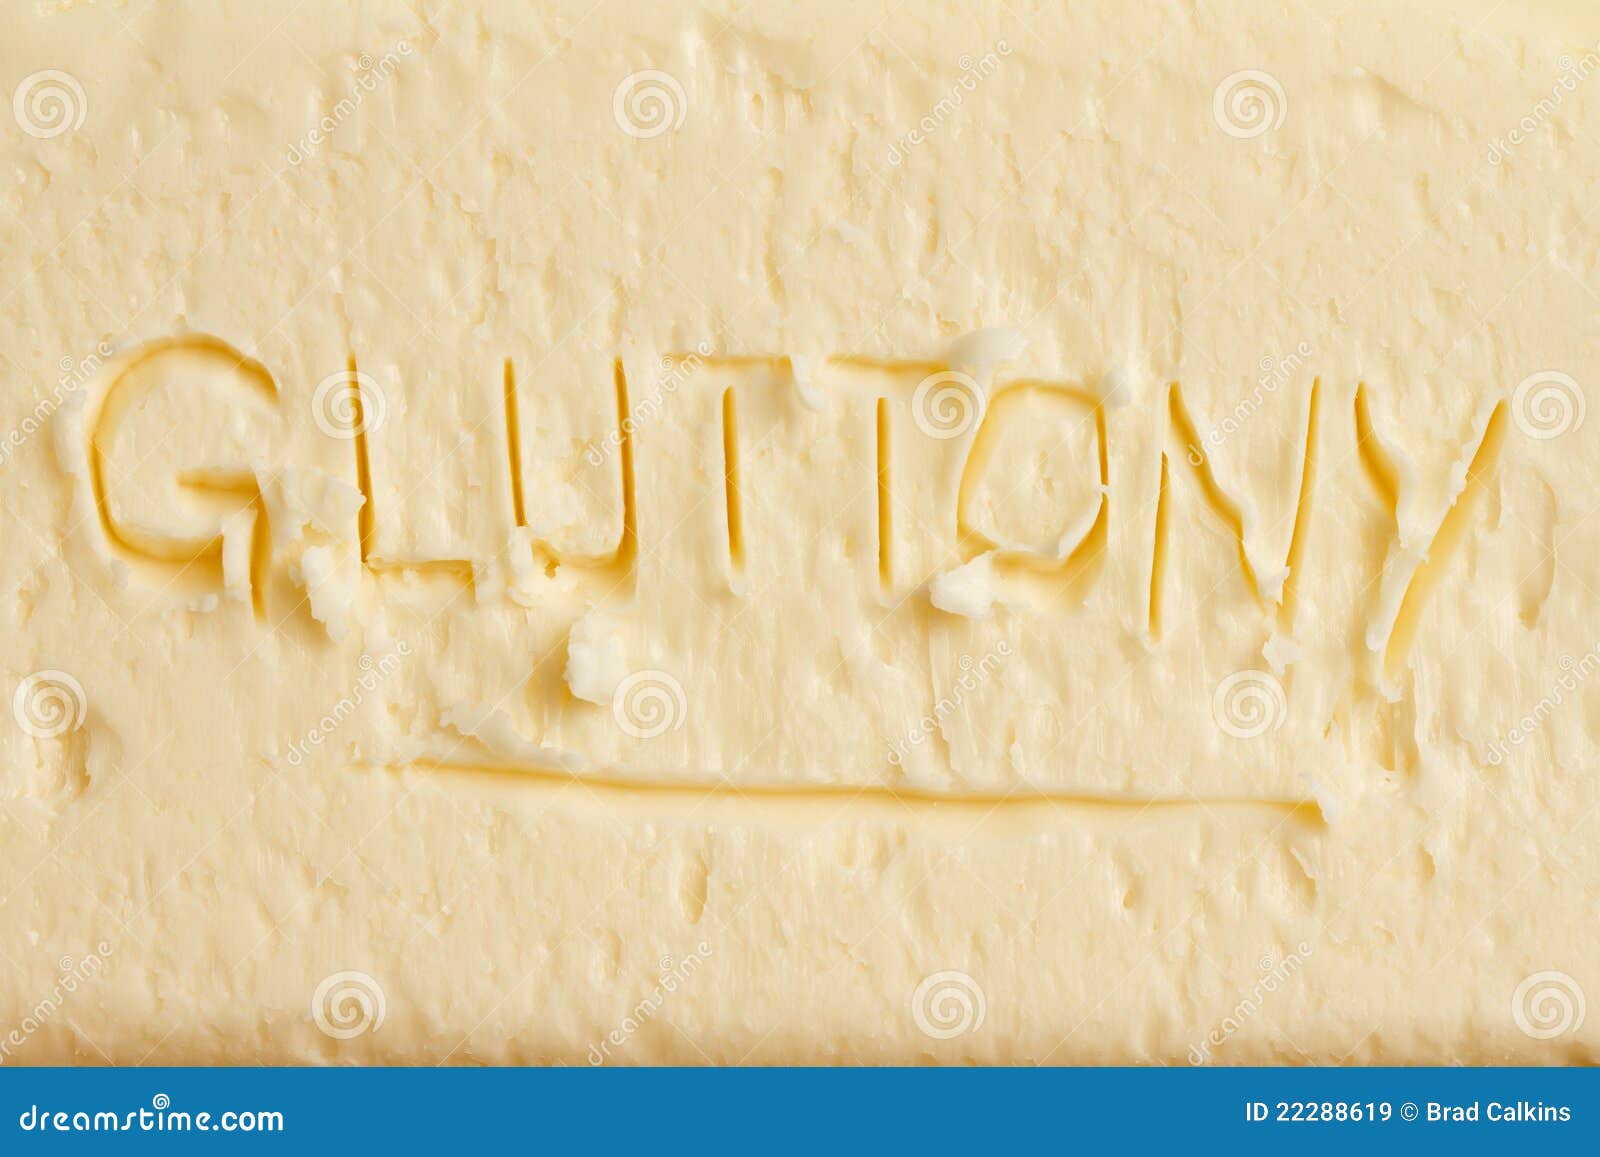 Conceito da glutonaria na gordura ou na manteiga